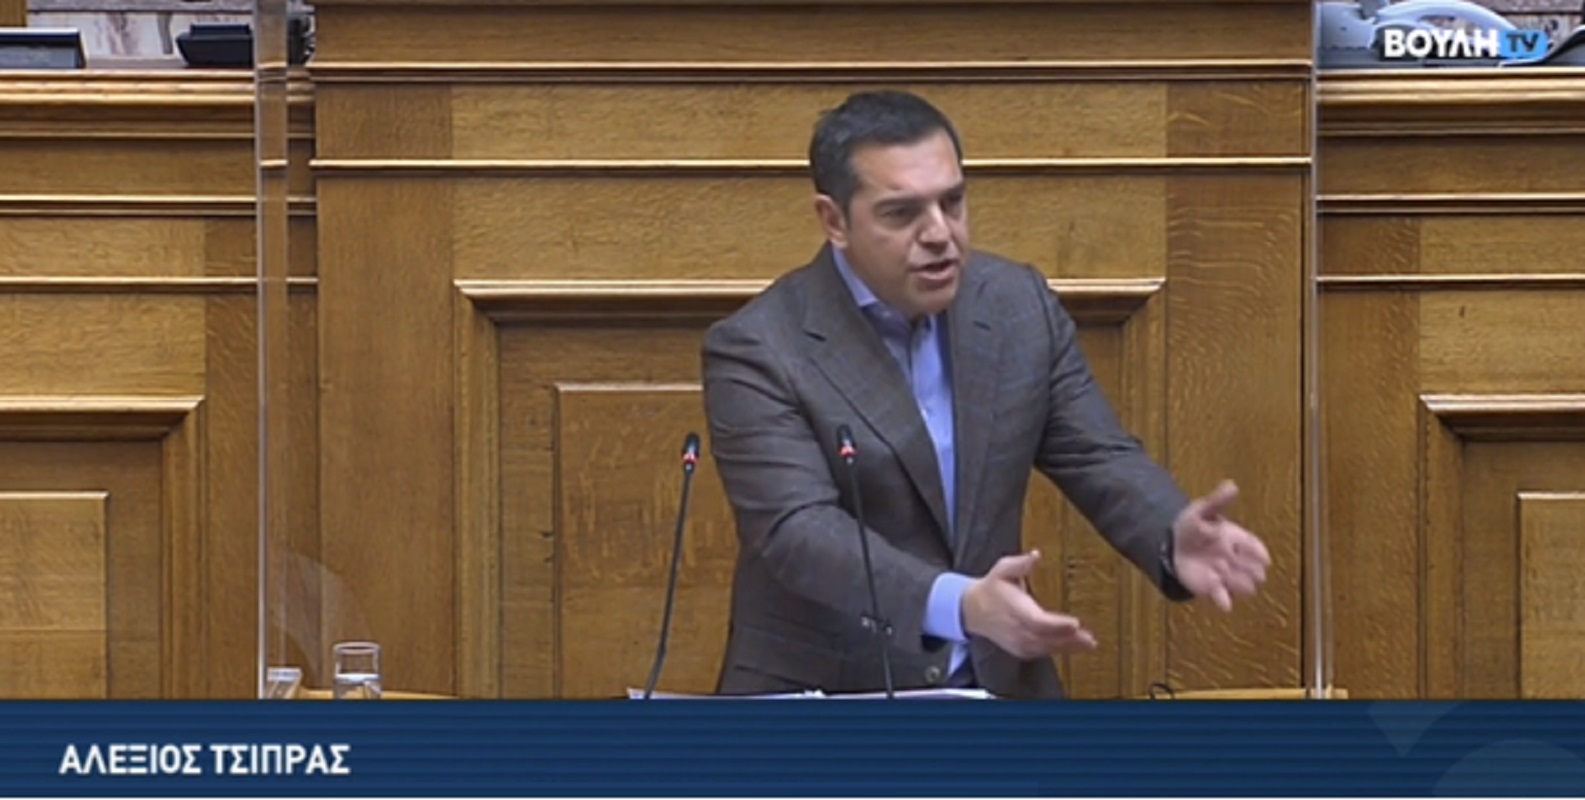 Αλέξης Τσίπρας: Ο κ. Μητσοτάκης απέδειξε την ενοχή και τη δειλία του - Κάντε μήνυση στους συκοφάντες (Βίντεο)